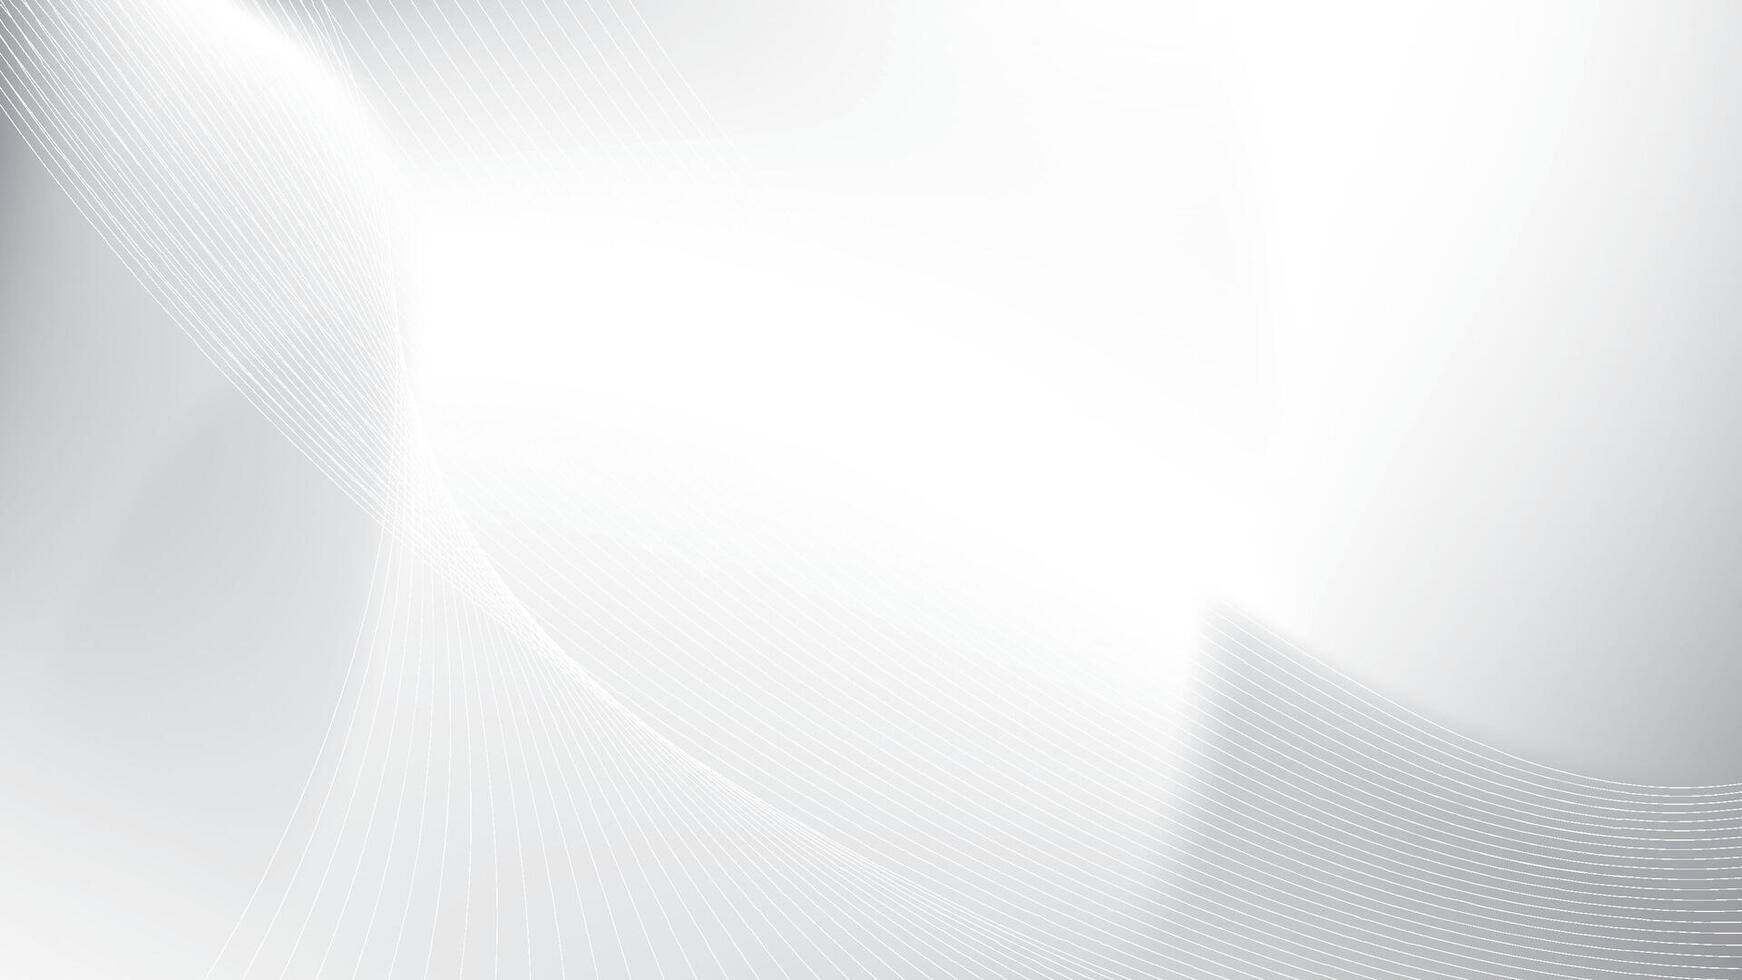 astratto bianca e grigio colore, moderno design strisce sfondo con ondulato modello. vettore illustrazione.